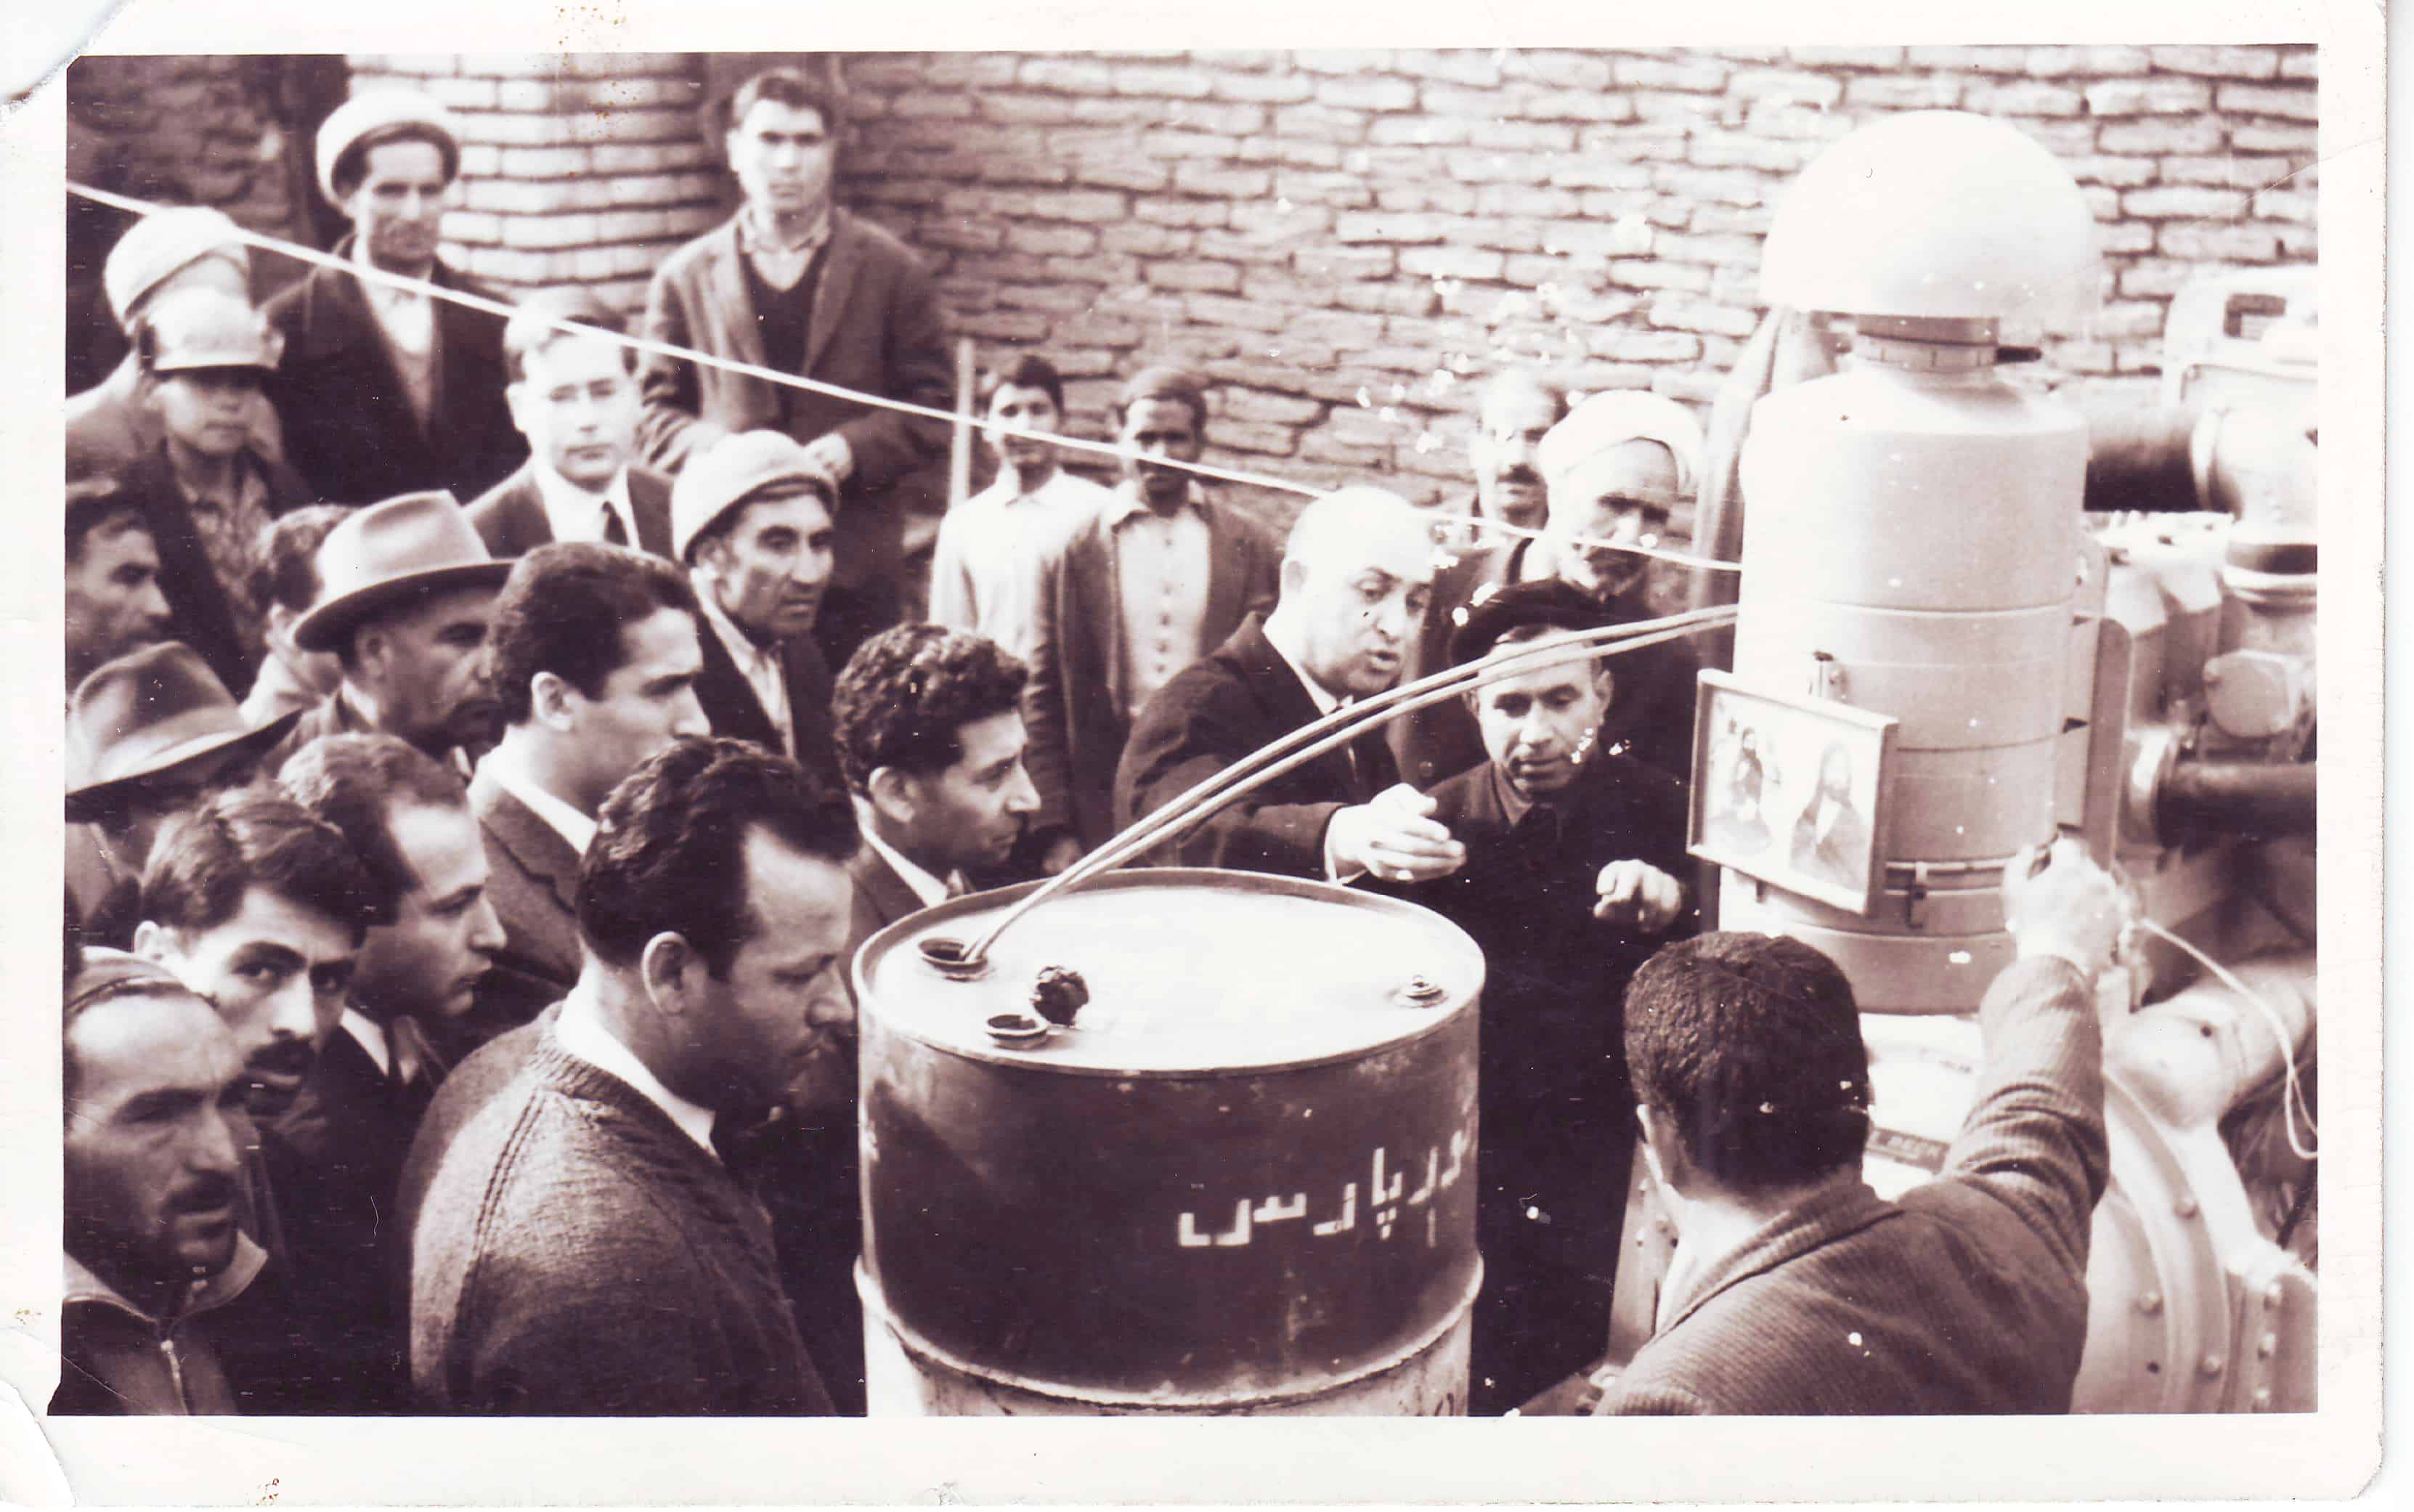 مراسم افتتاحیه چاه عمیق کشاورزی روستای دهنو علی خان آباد( الخان آباد )60 سال پیش